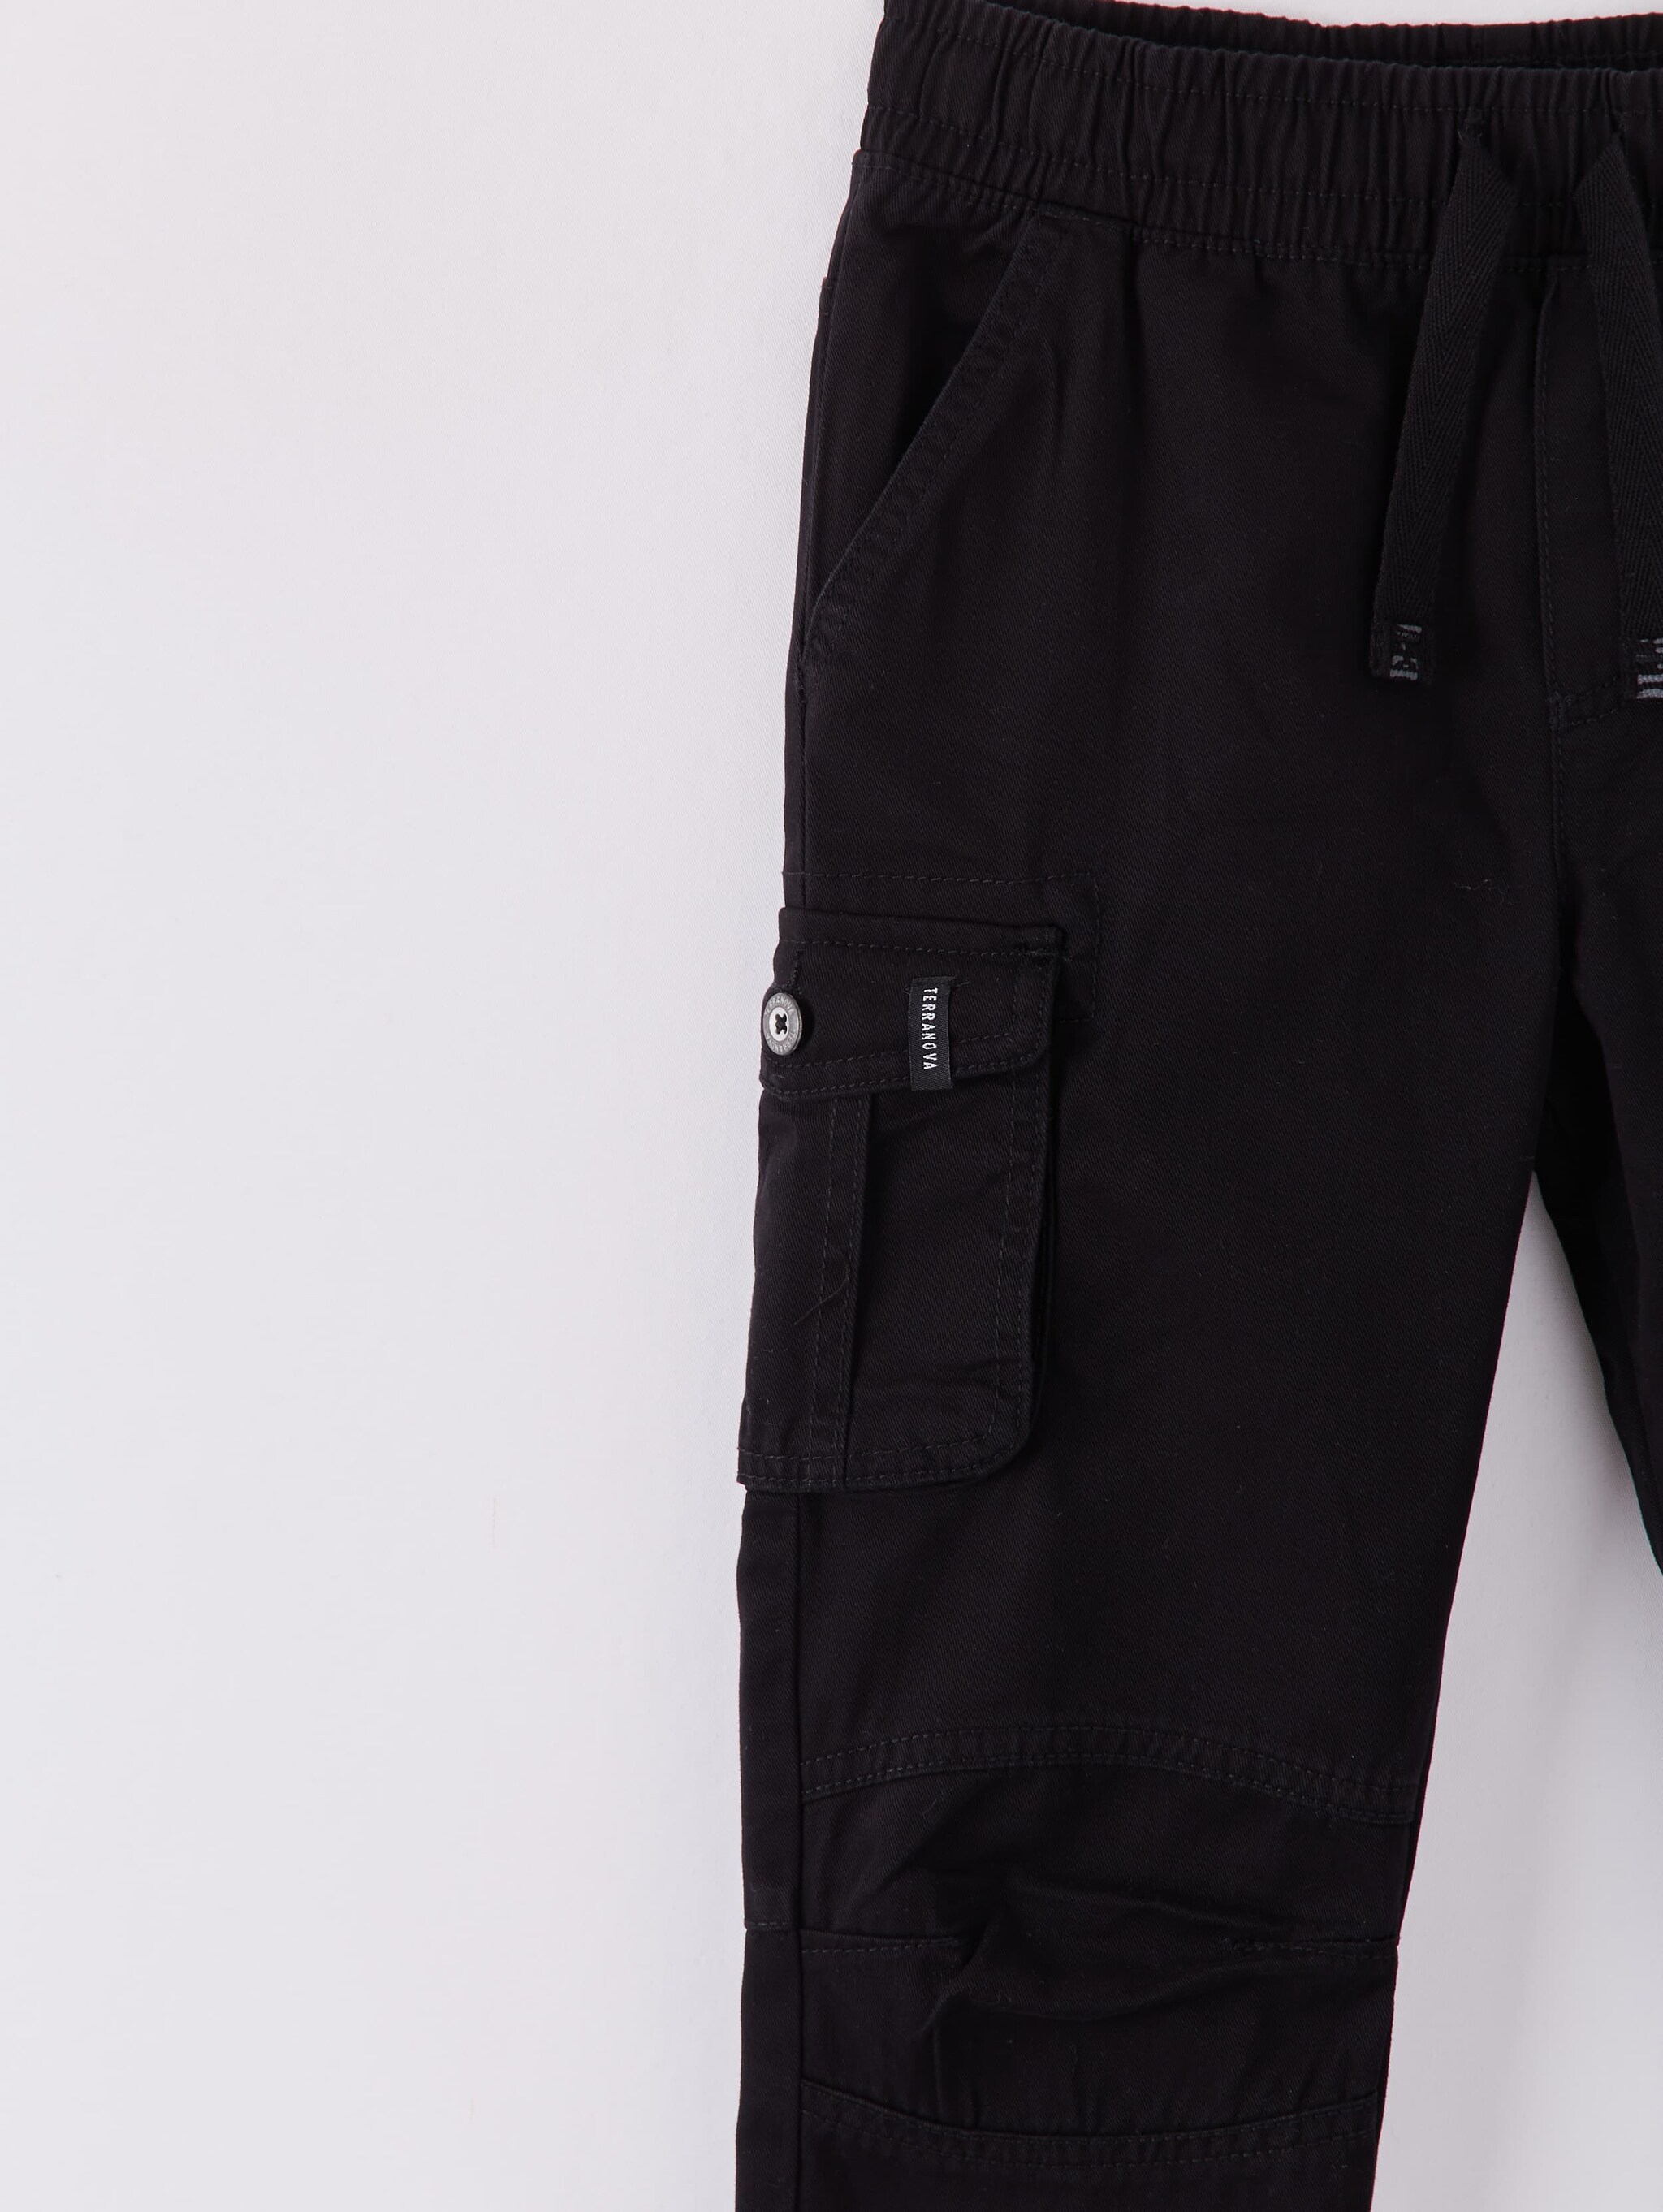 plain black cargo pants